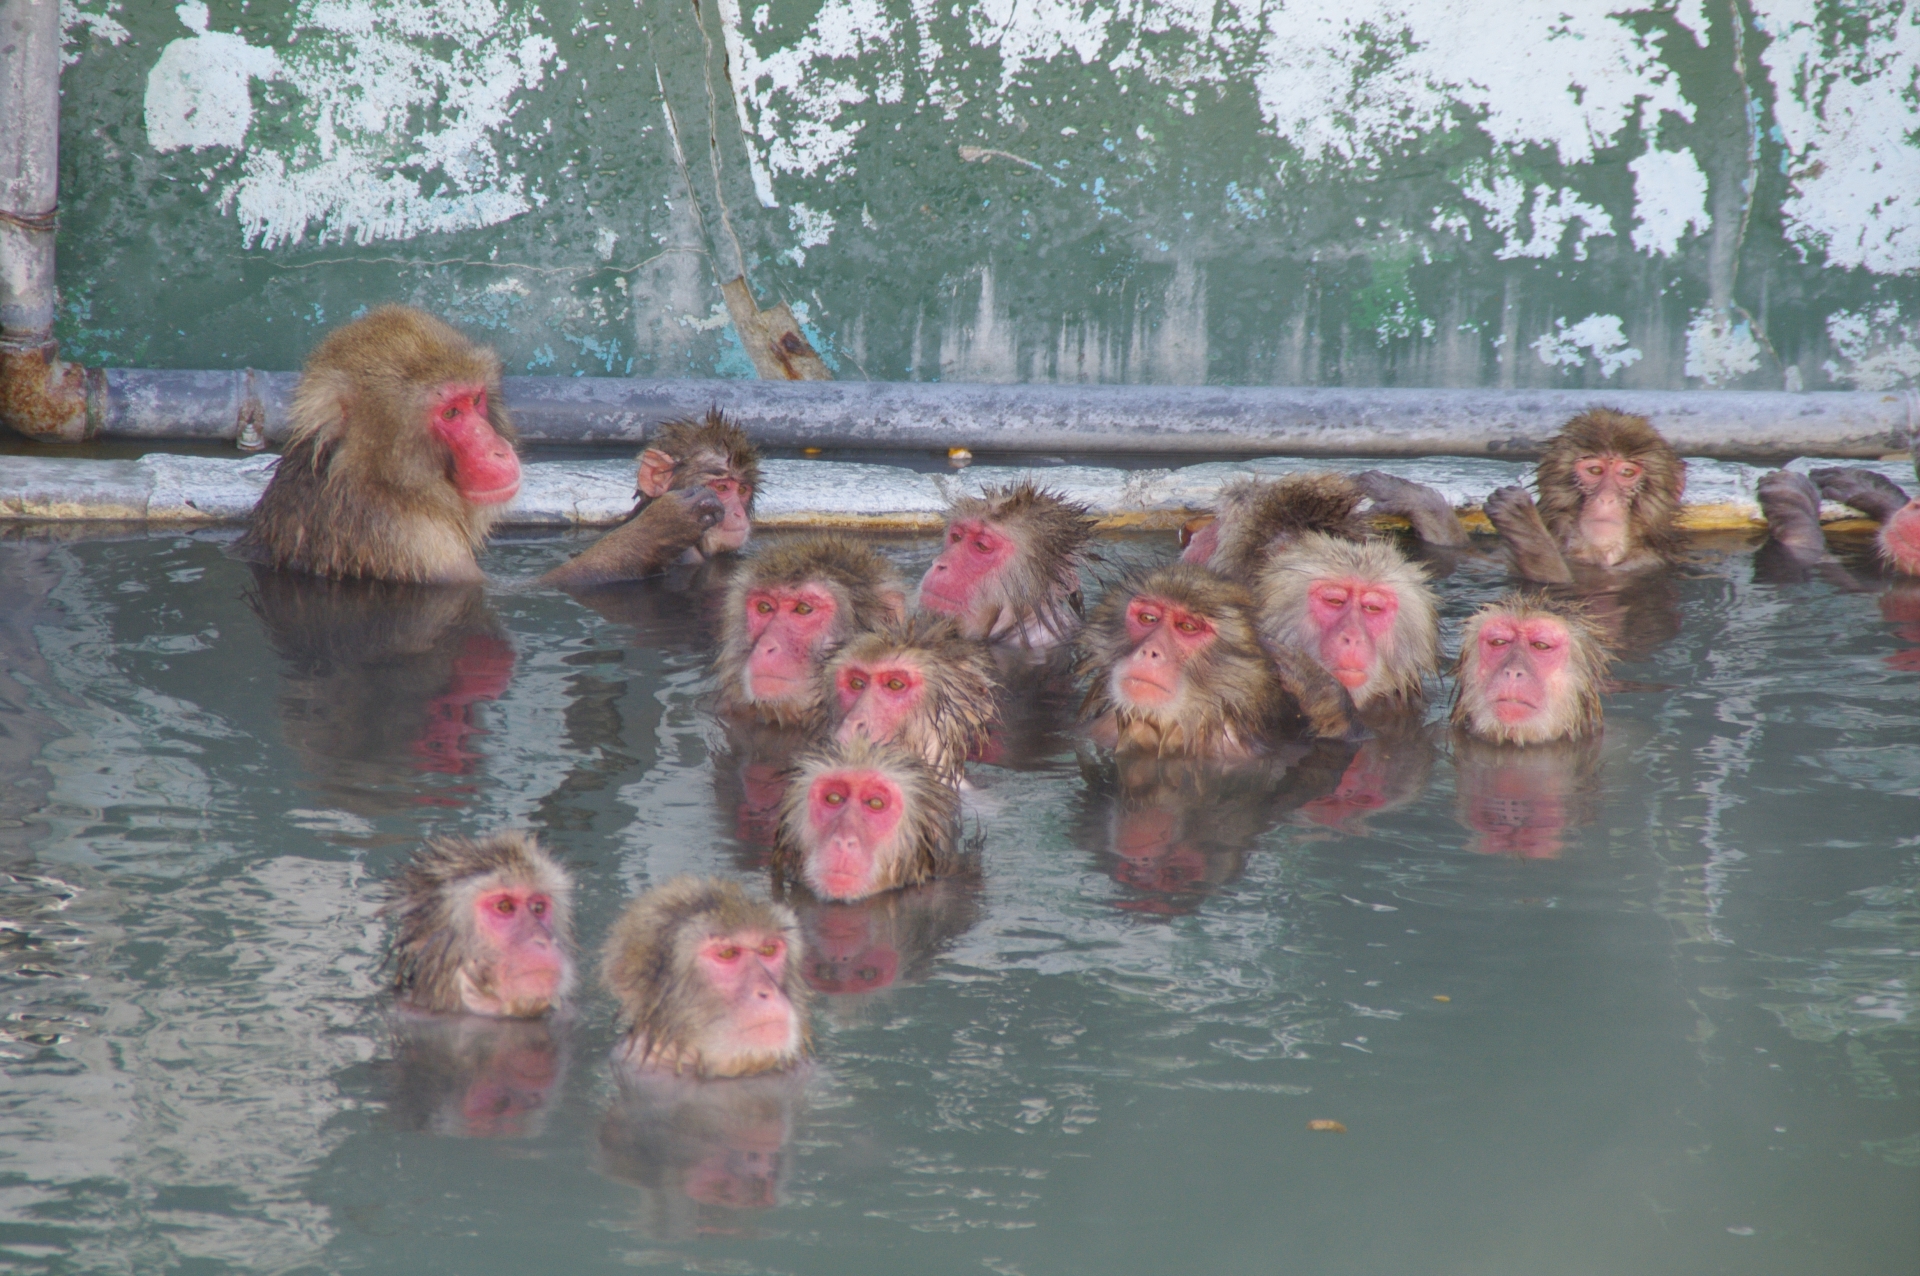 京都嵐山の猿「暑くてかなわん…潜水するか」